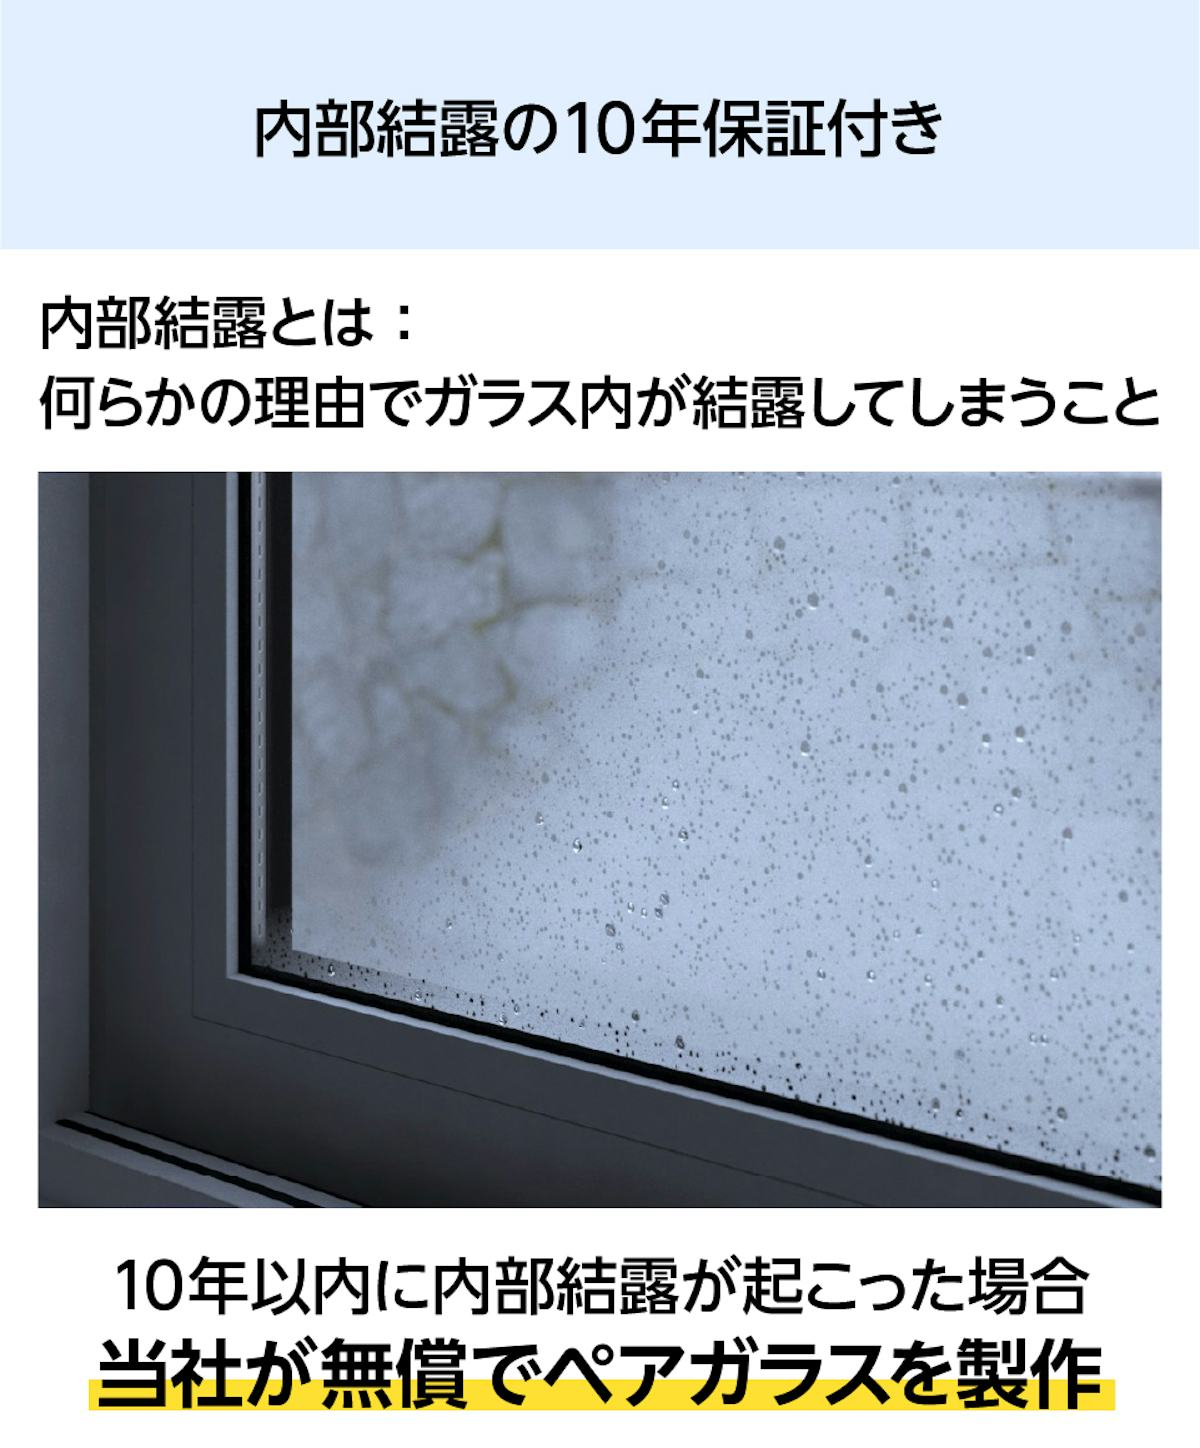 「結露防止ガラス プレミアム」の窓に内部結露が起きた場合に備えた保証がある